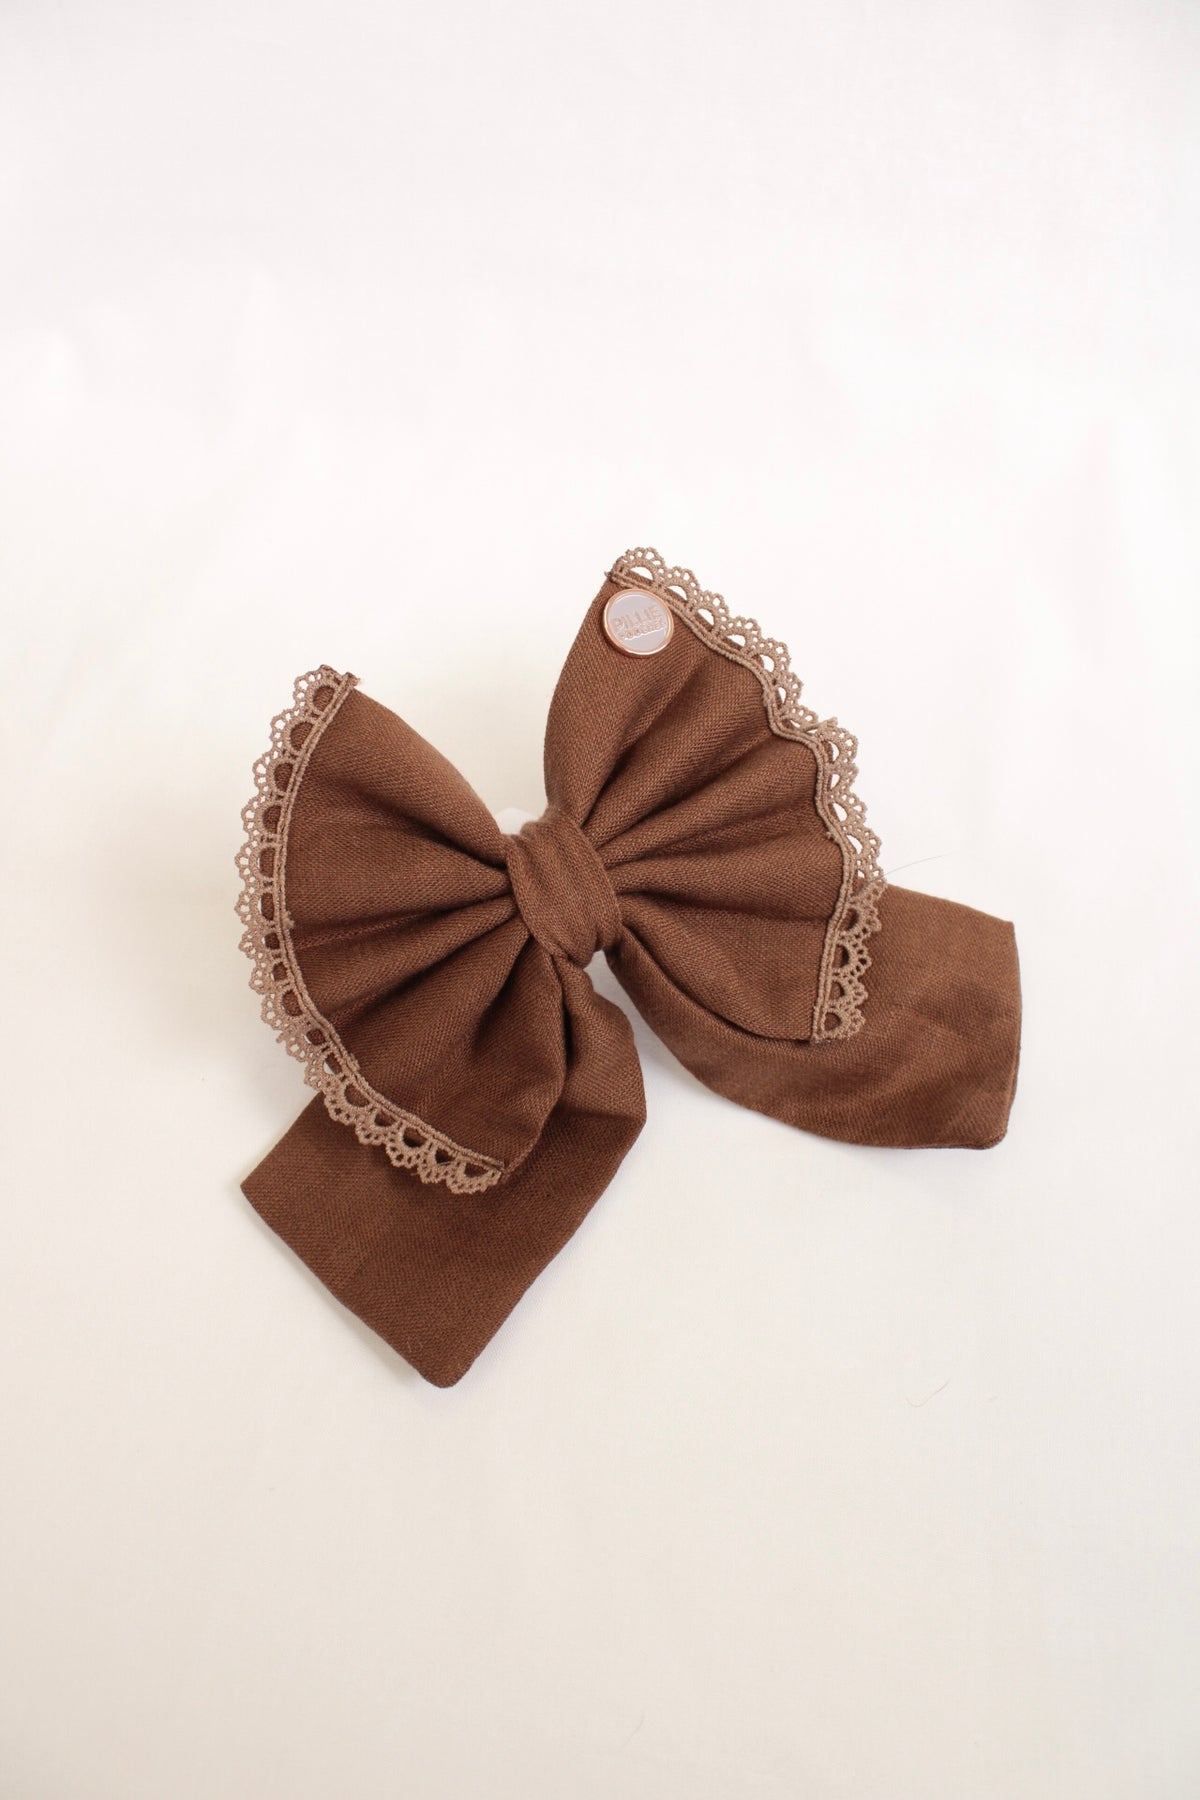 Cocoa - Bows (Sailor or Standard)